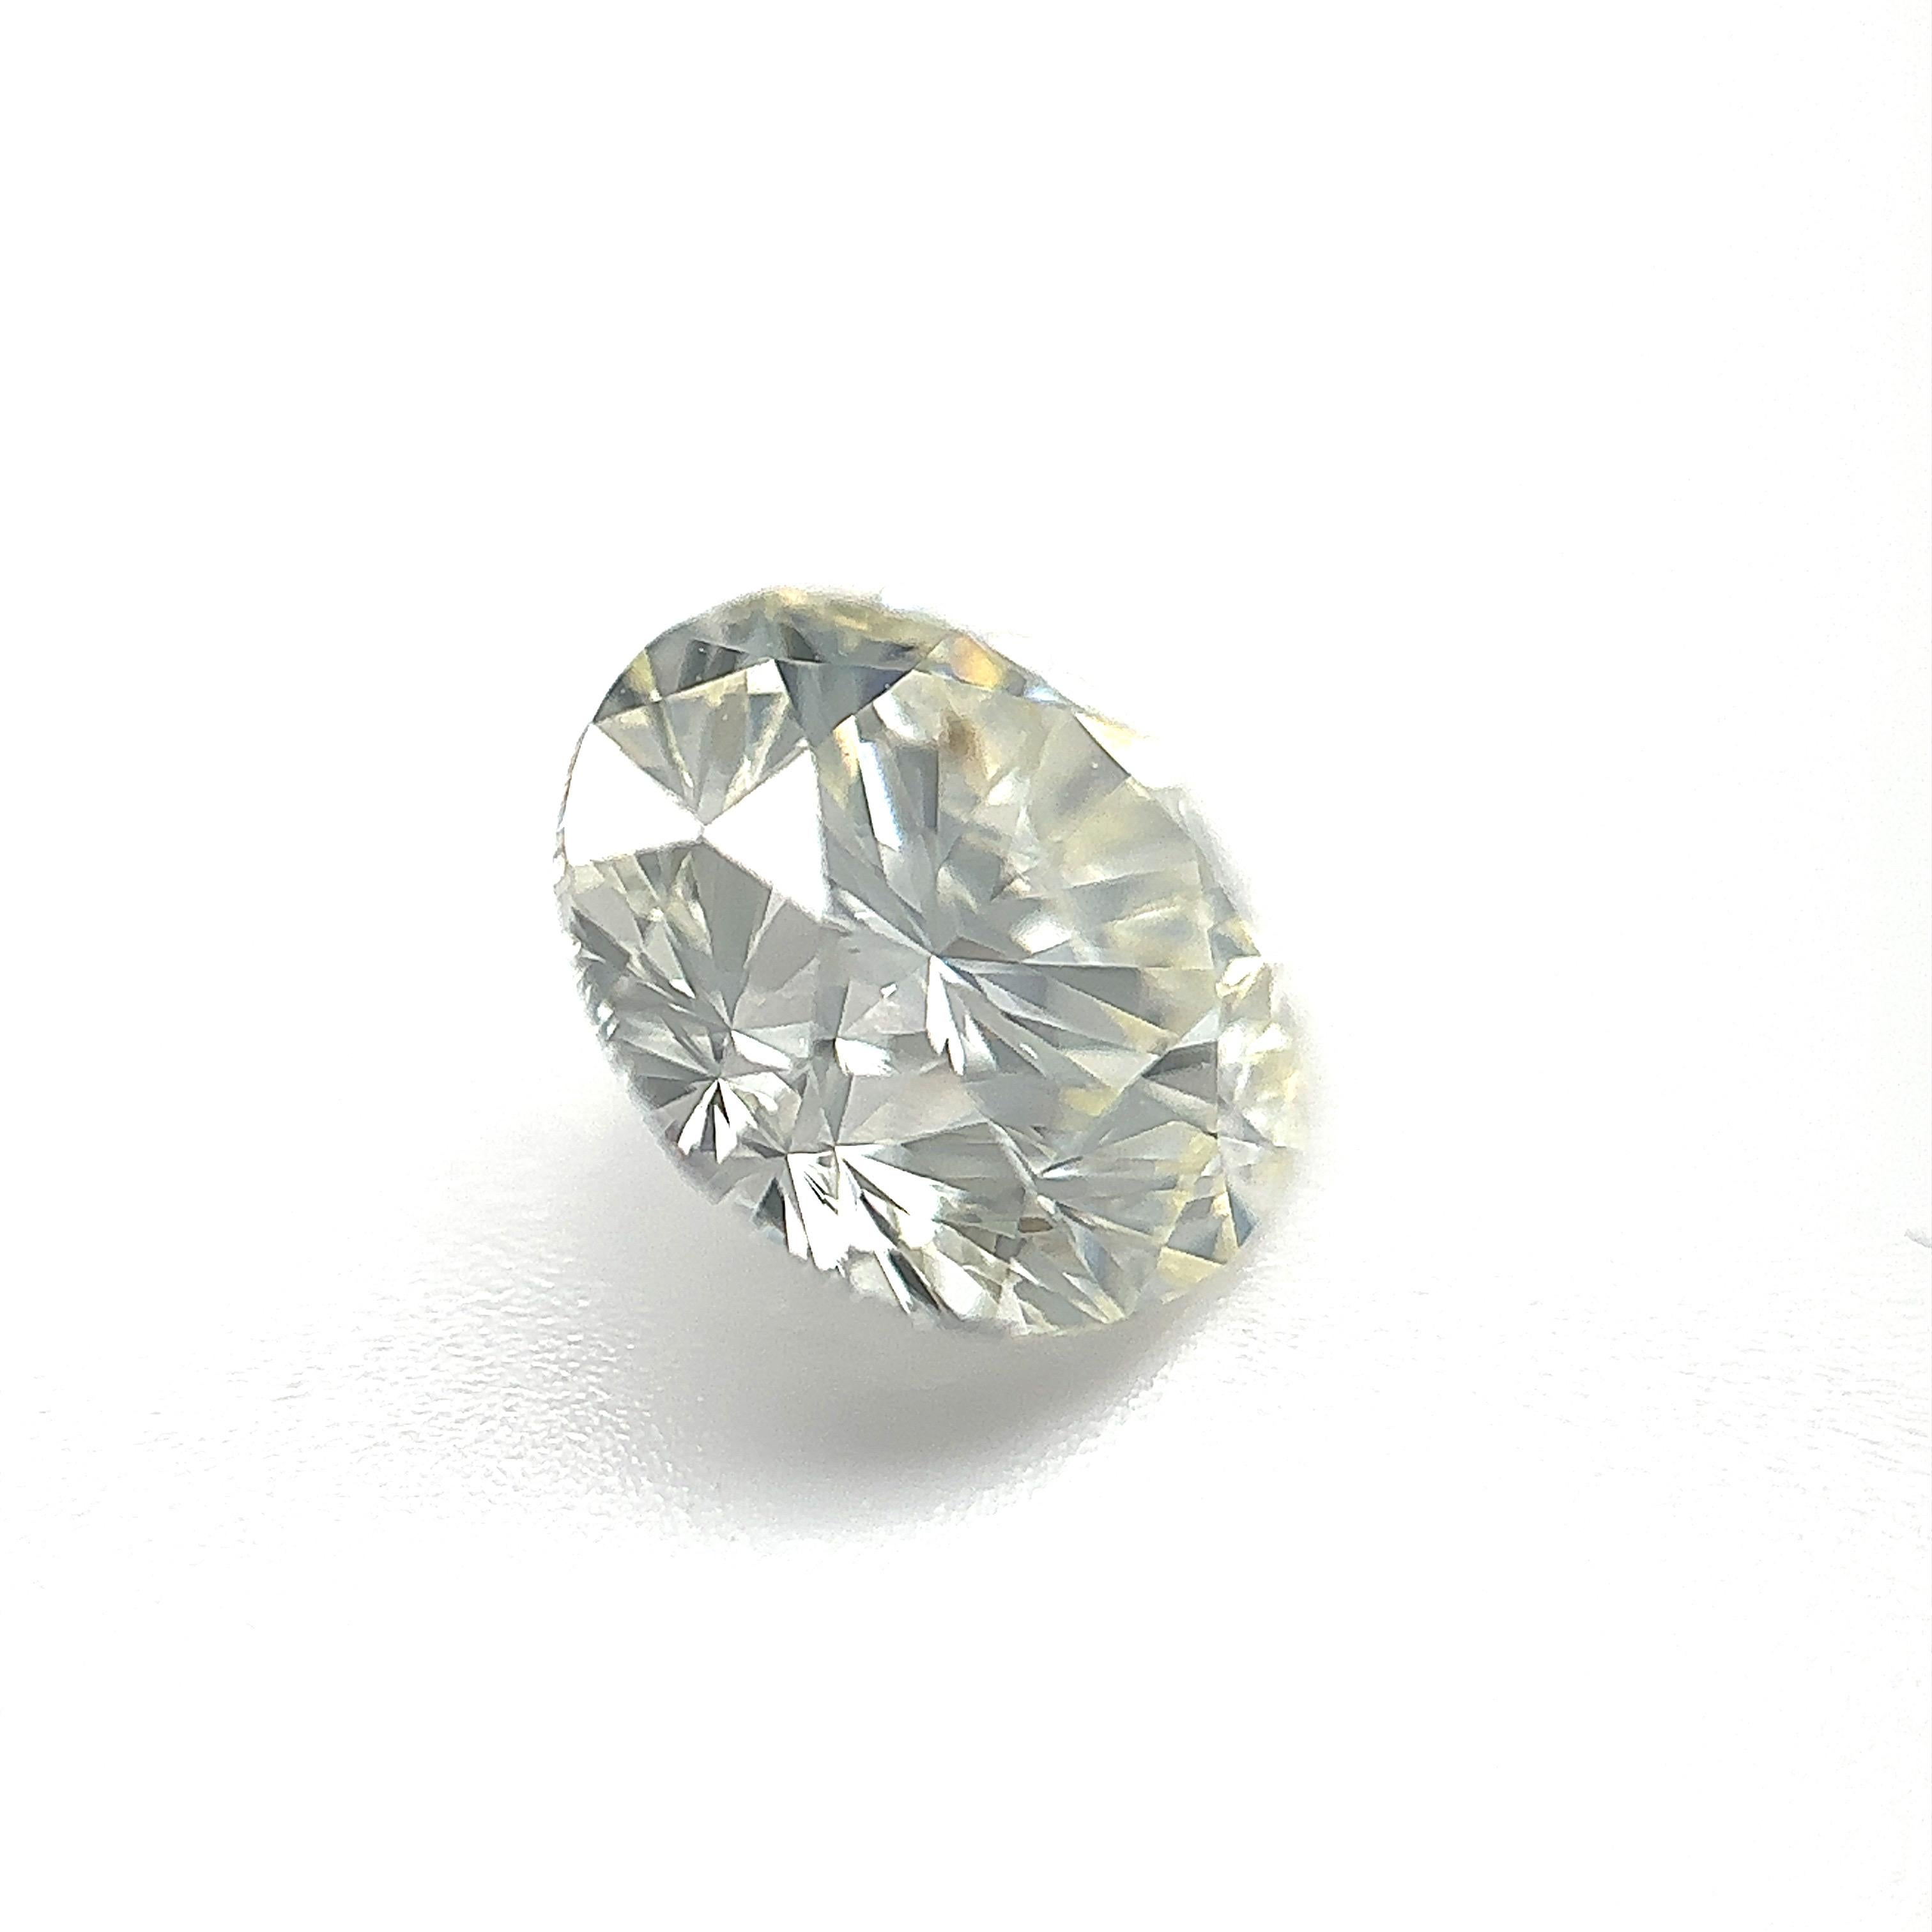 GIA-zertifizierter 1,71 Karat runder Brillant-Naturdiamant Lose Stein (Anpassungsoption)

Farbe: J
Klarheit: VS2

Ideal für Verlobungsringe, Eheringe, Diamant-Halsketten und Diamant-Ohrringe. Setzen Sie sich mit uns in Verbindung, um Ihren Schmuck